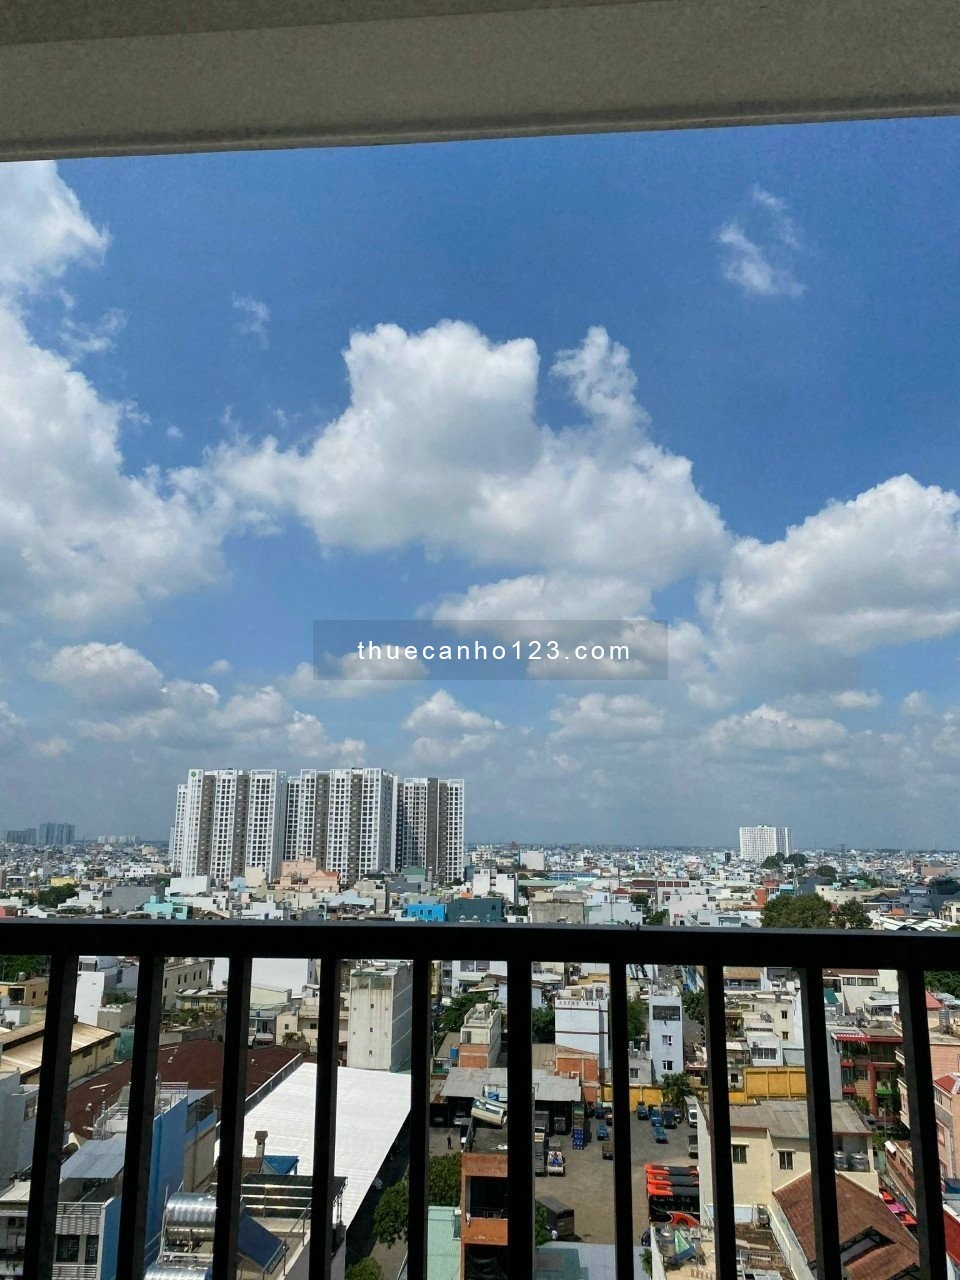 Cần cho thuê căn hộ Carillon5 Tân Phú, 70m2, 2pn giá chỉ 9tr/thang